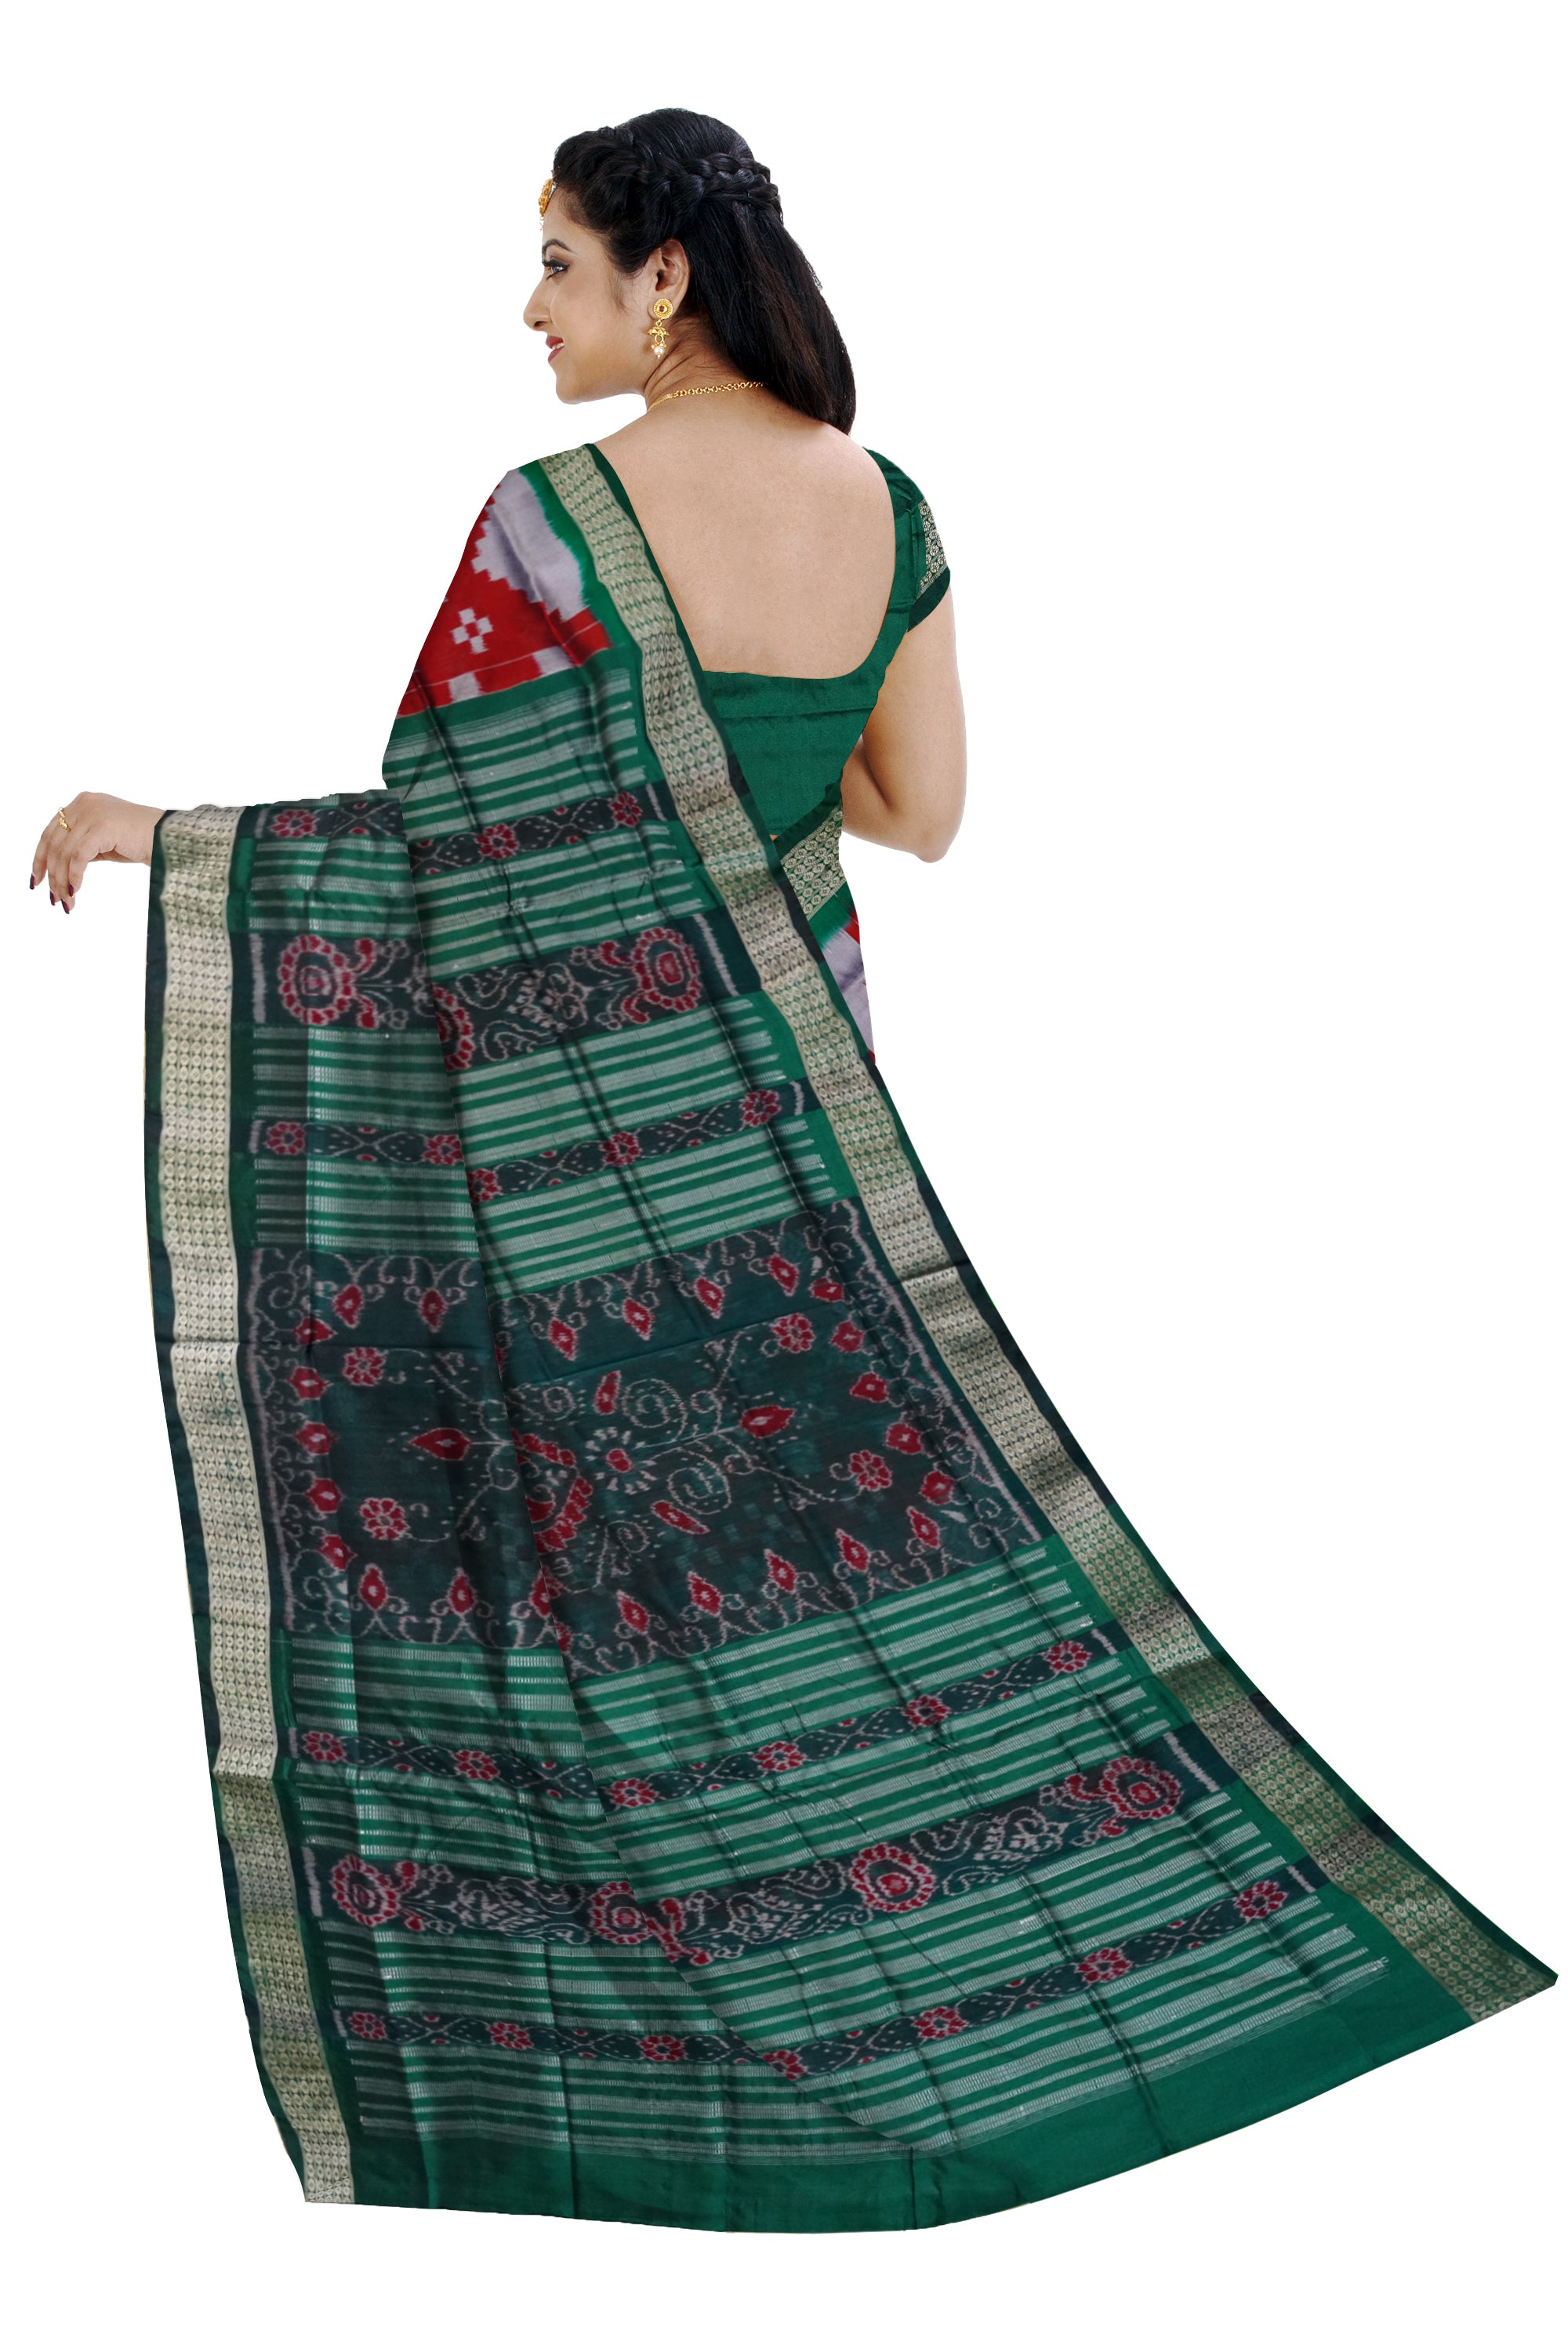 Whole body pasapali pattern sapta pata saree in Maroon and Green color. - Koshali Arts & Crafts Enterprise